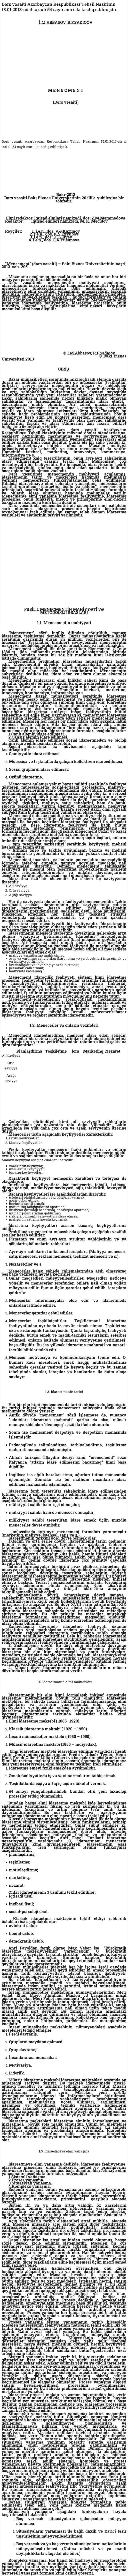 Dərs vəsaiti Azərbaycan Respublikası Təhsil Nazirinin 18.01.2013-cü il tarixli 54 saylı əmri ilə təsdiq edilmişdir